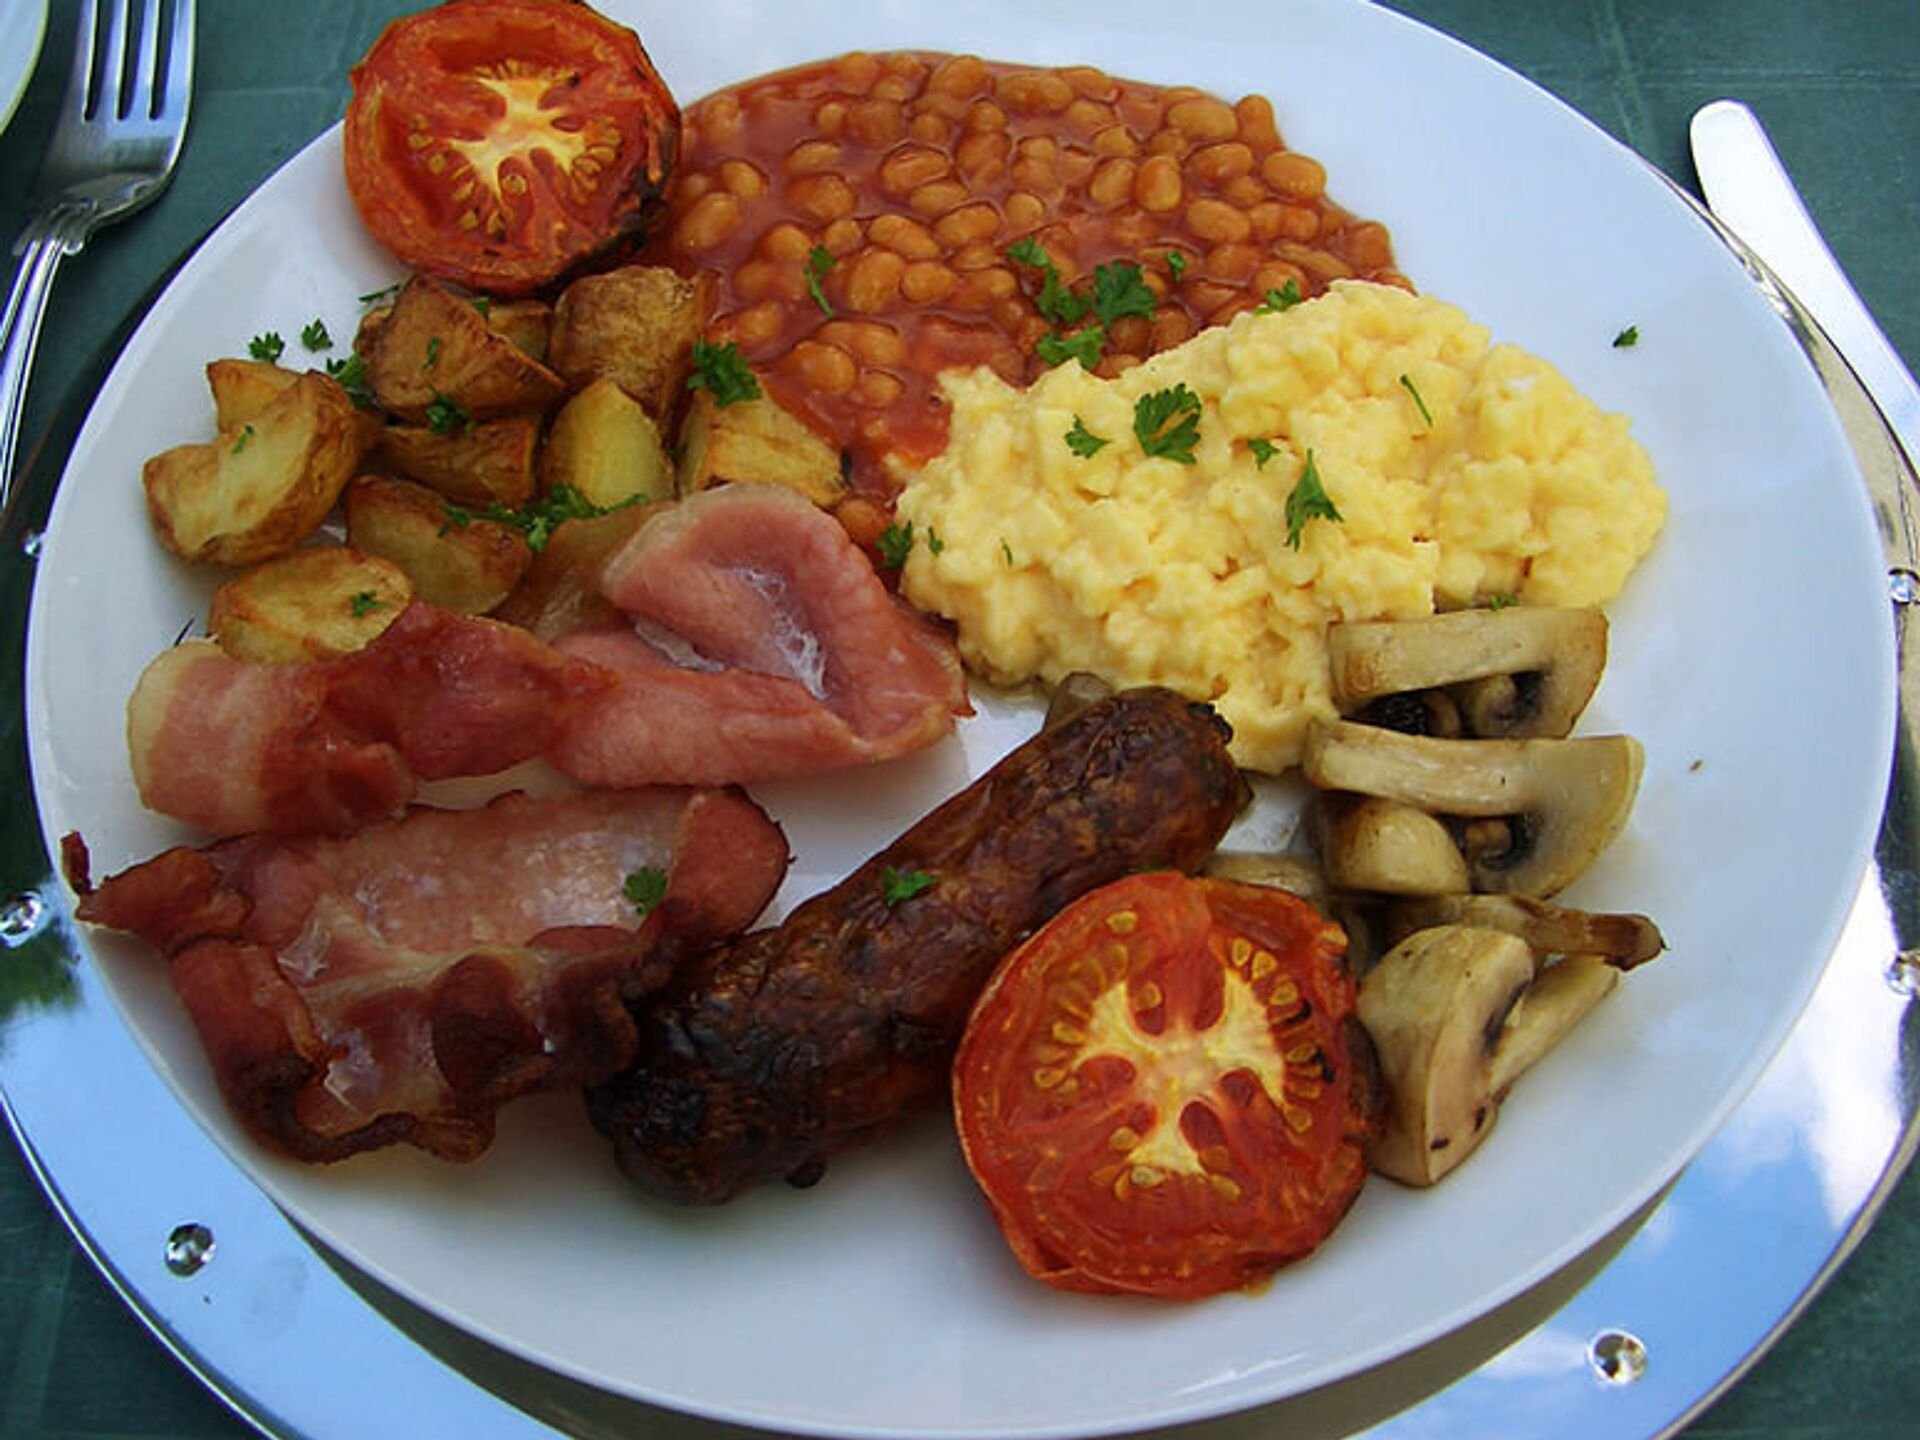 English dishes. Английский завтрак. Традиционный английский завтрак. Британская кухня. Традиционная еда в Великобритании.